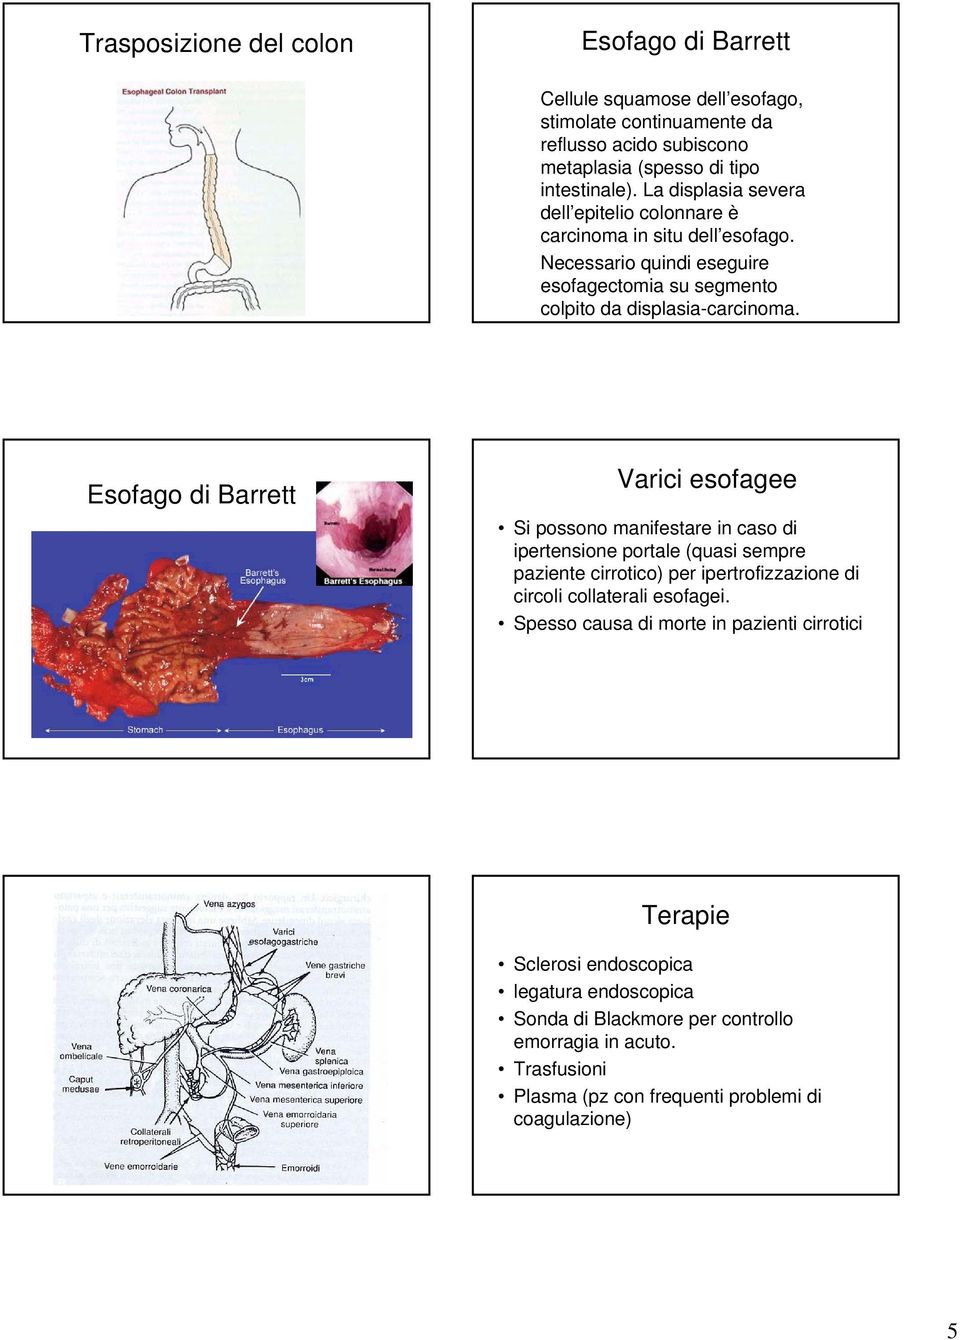 Esofago di Barrett Varici esofagee Si possono manifestare in caso di ipertensione portale (quasi sempre paziente cirrotico) per ipertrofizzazione di circoli collaterali esofagei.